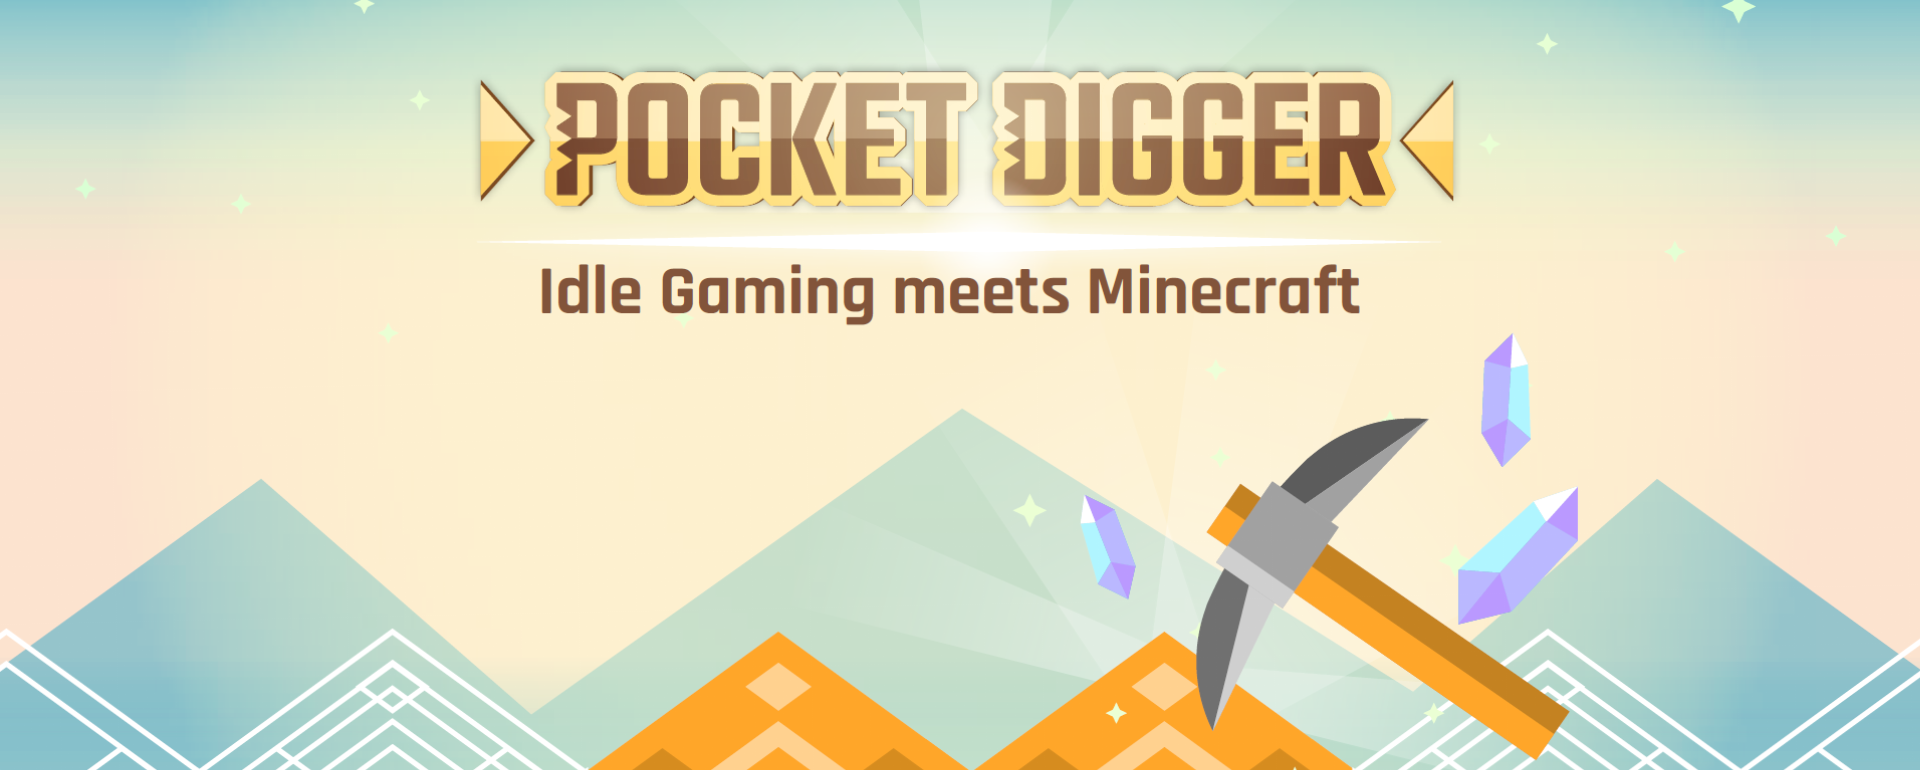 Pocket Digger Header